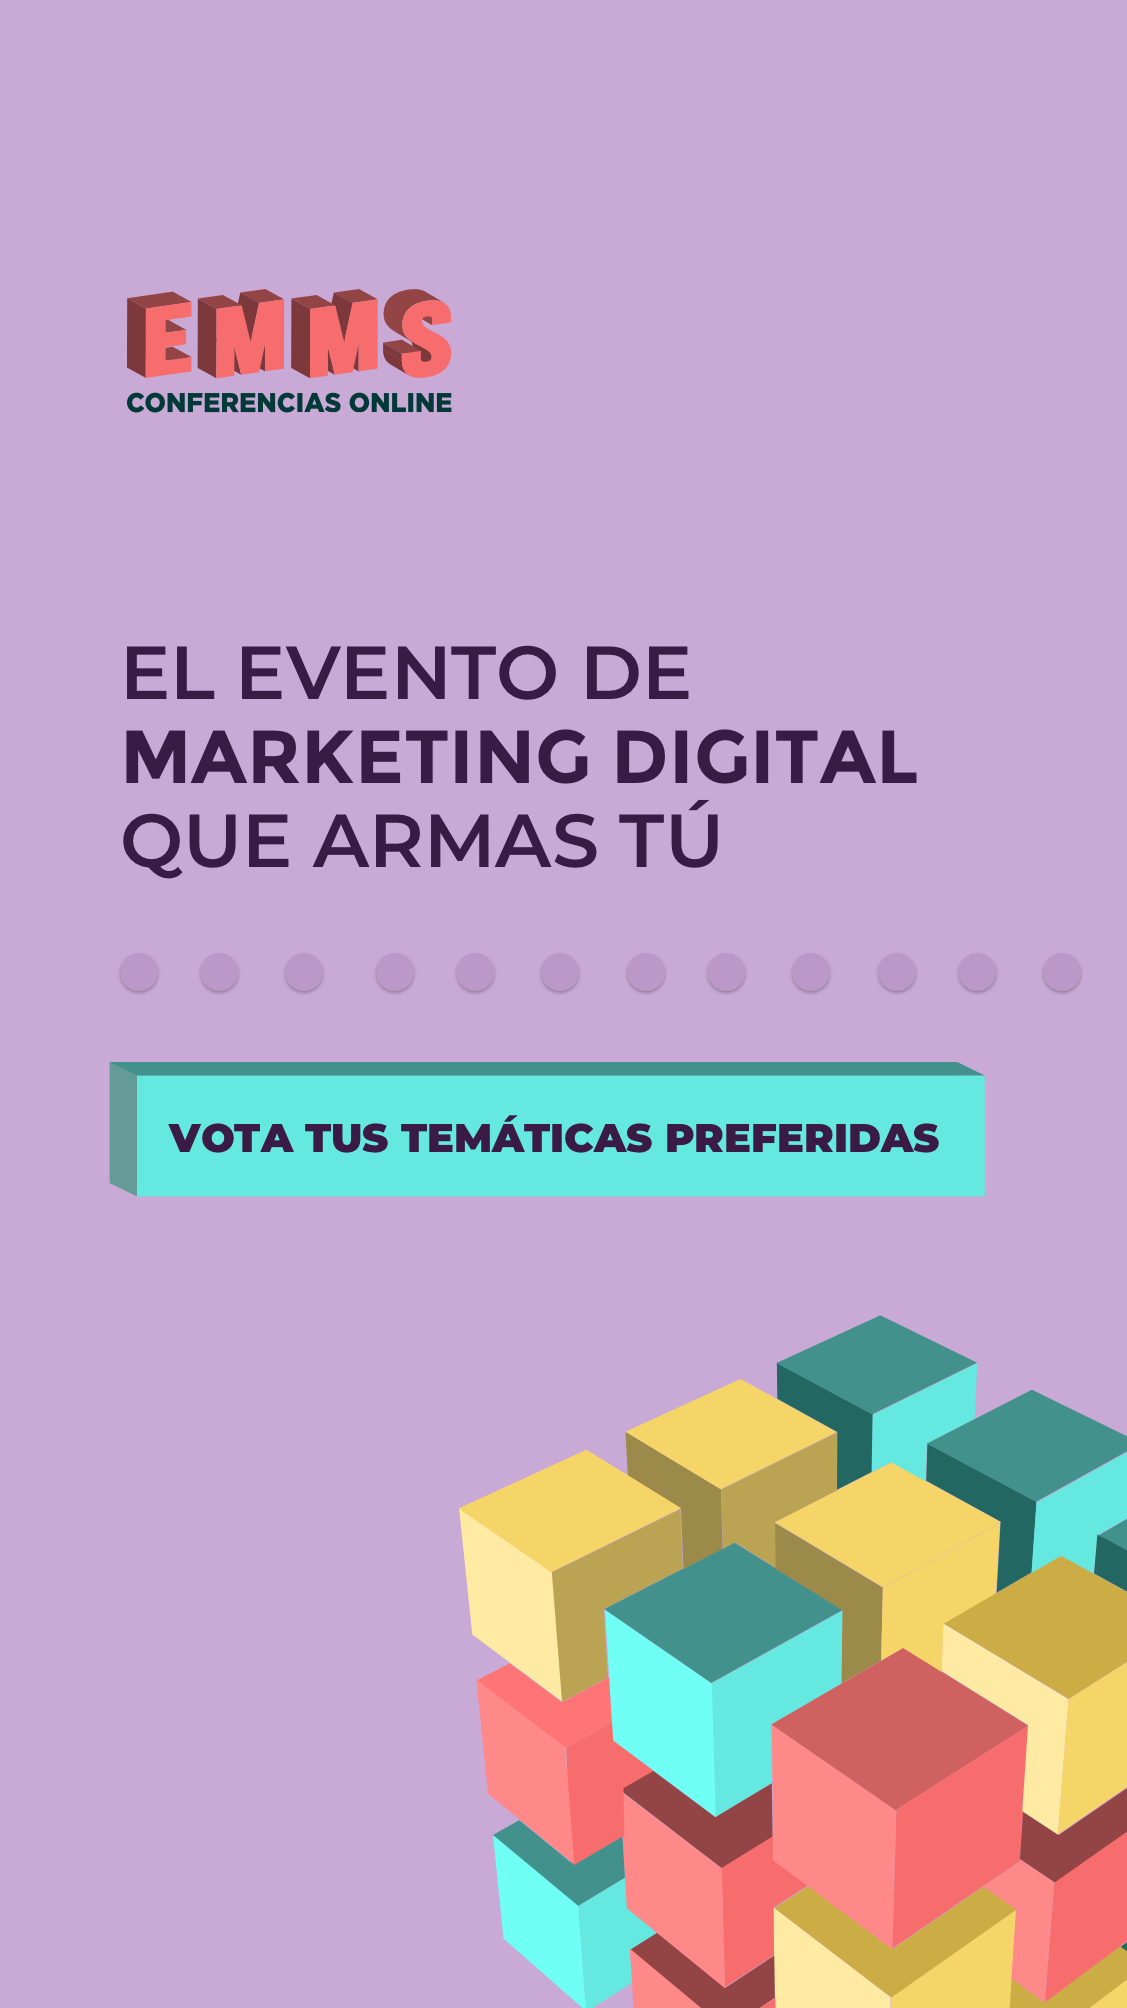 EMMS 2019, el evento online y gratuito de Marketing Digital